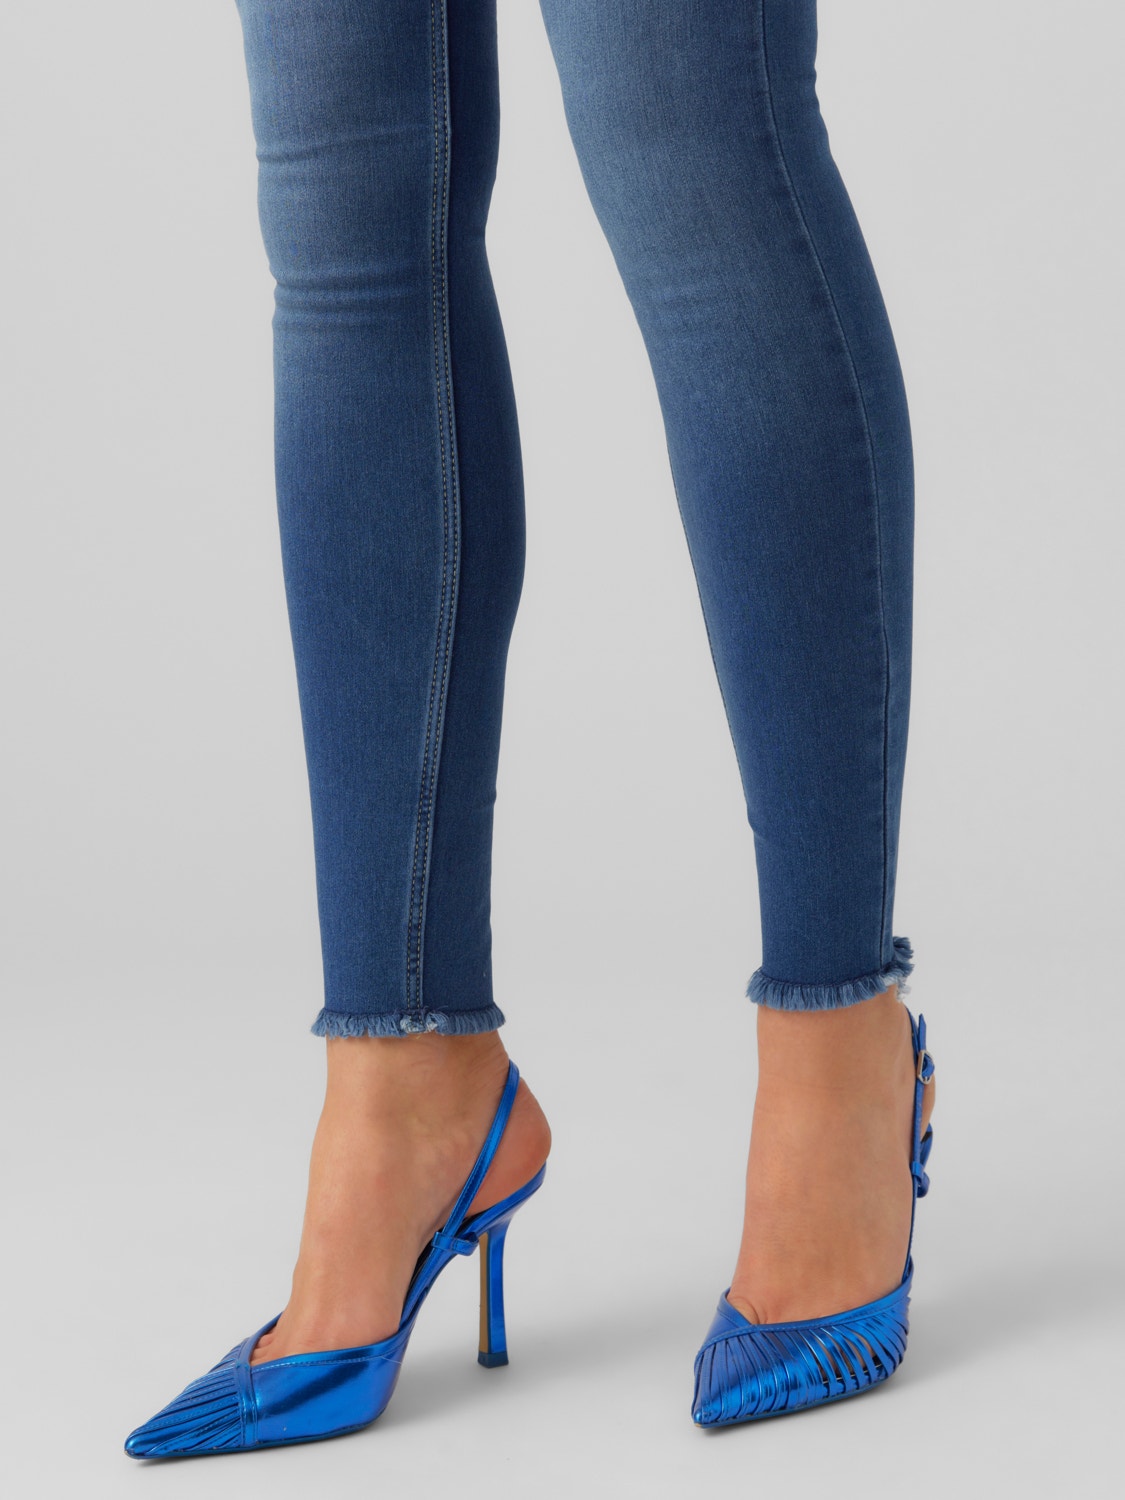 Vero Moda VMLYDIA Niski stan Krój skinny Jeans -Medium Blue Denim - 10264590